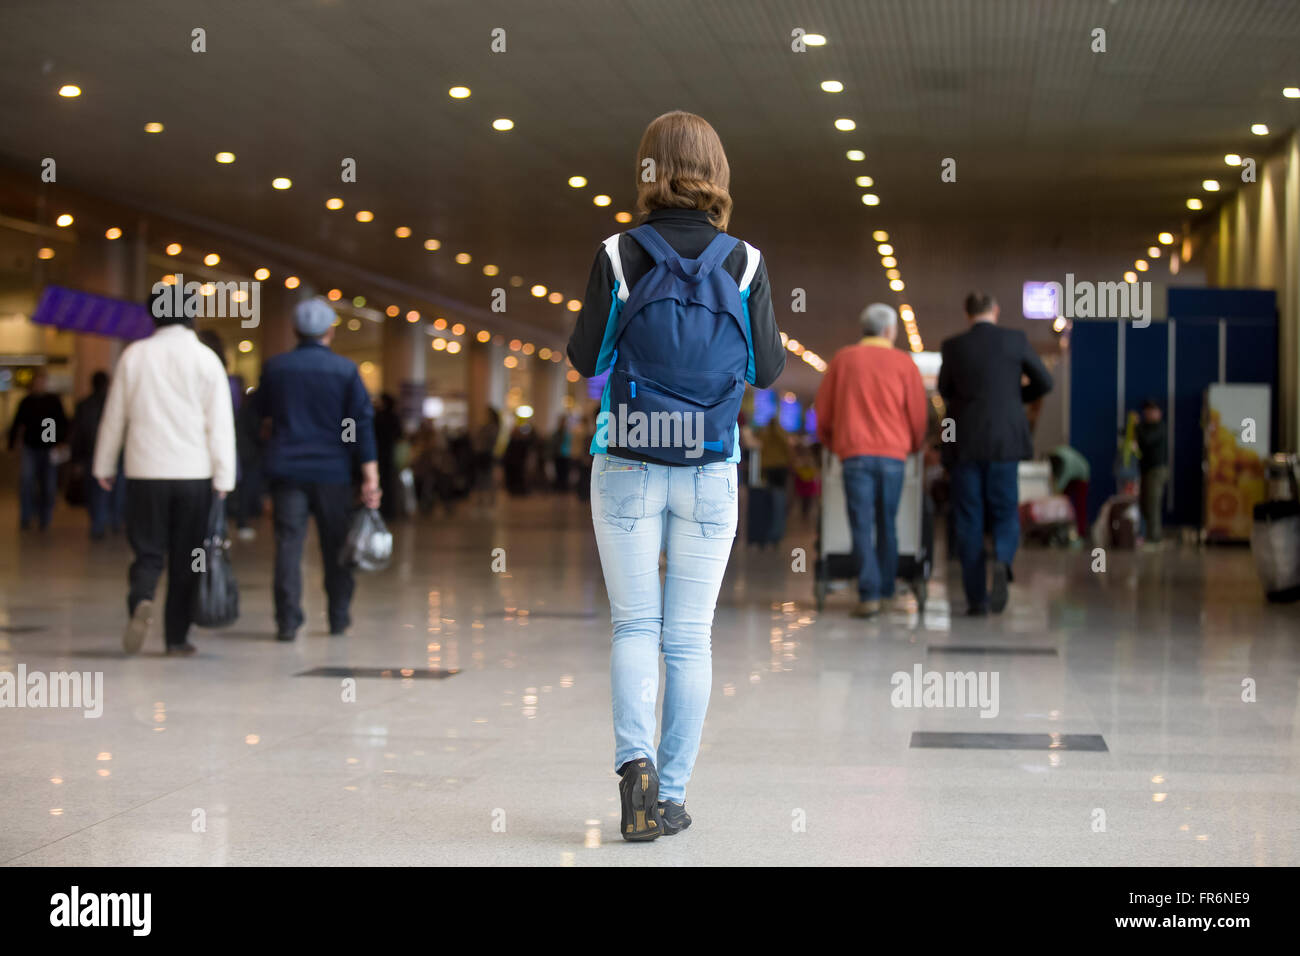 Giovane donna in 20s con zaino camminando in airport terminal, indossando il jersey, jeans e scarpe da ginnastica, offuscata la folla di viaggiare pe Foto Stock